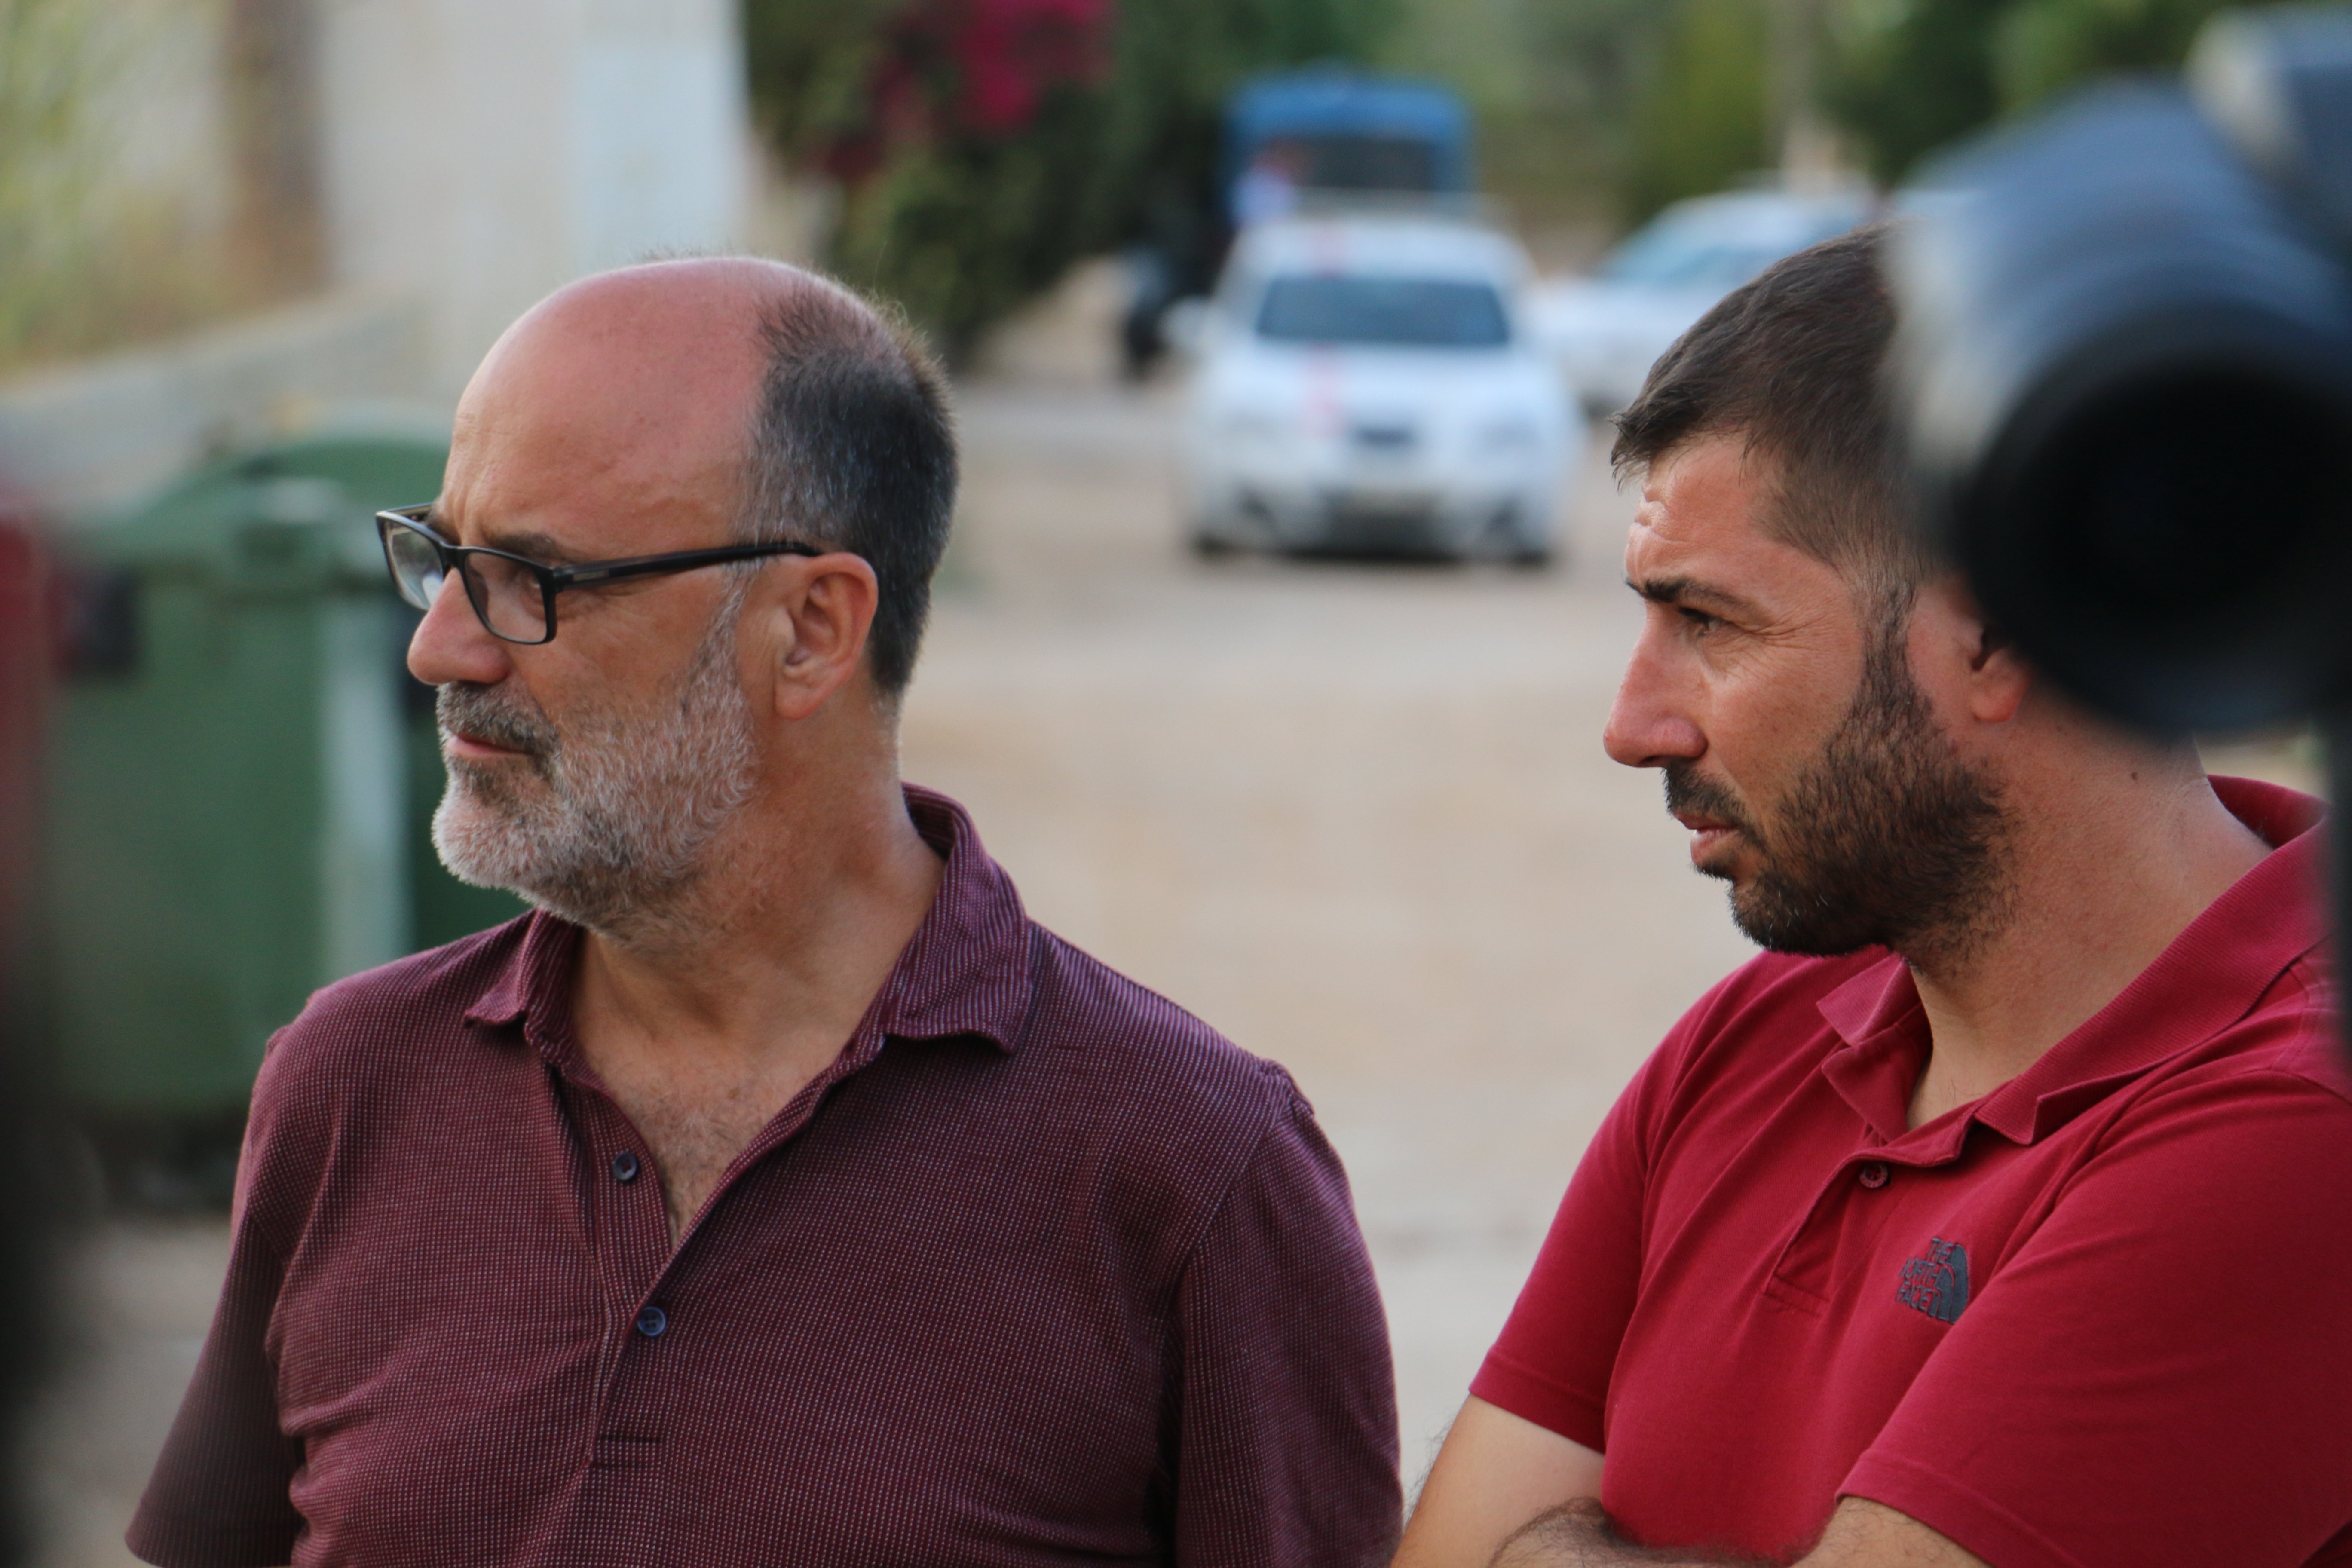 Alcalde d’Alcanar: “No vam pensar mai que tindríem un focus gihadista al costat de casa”